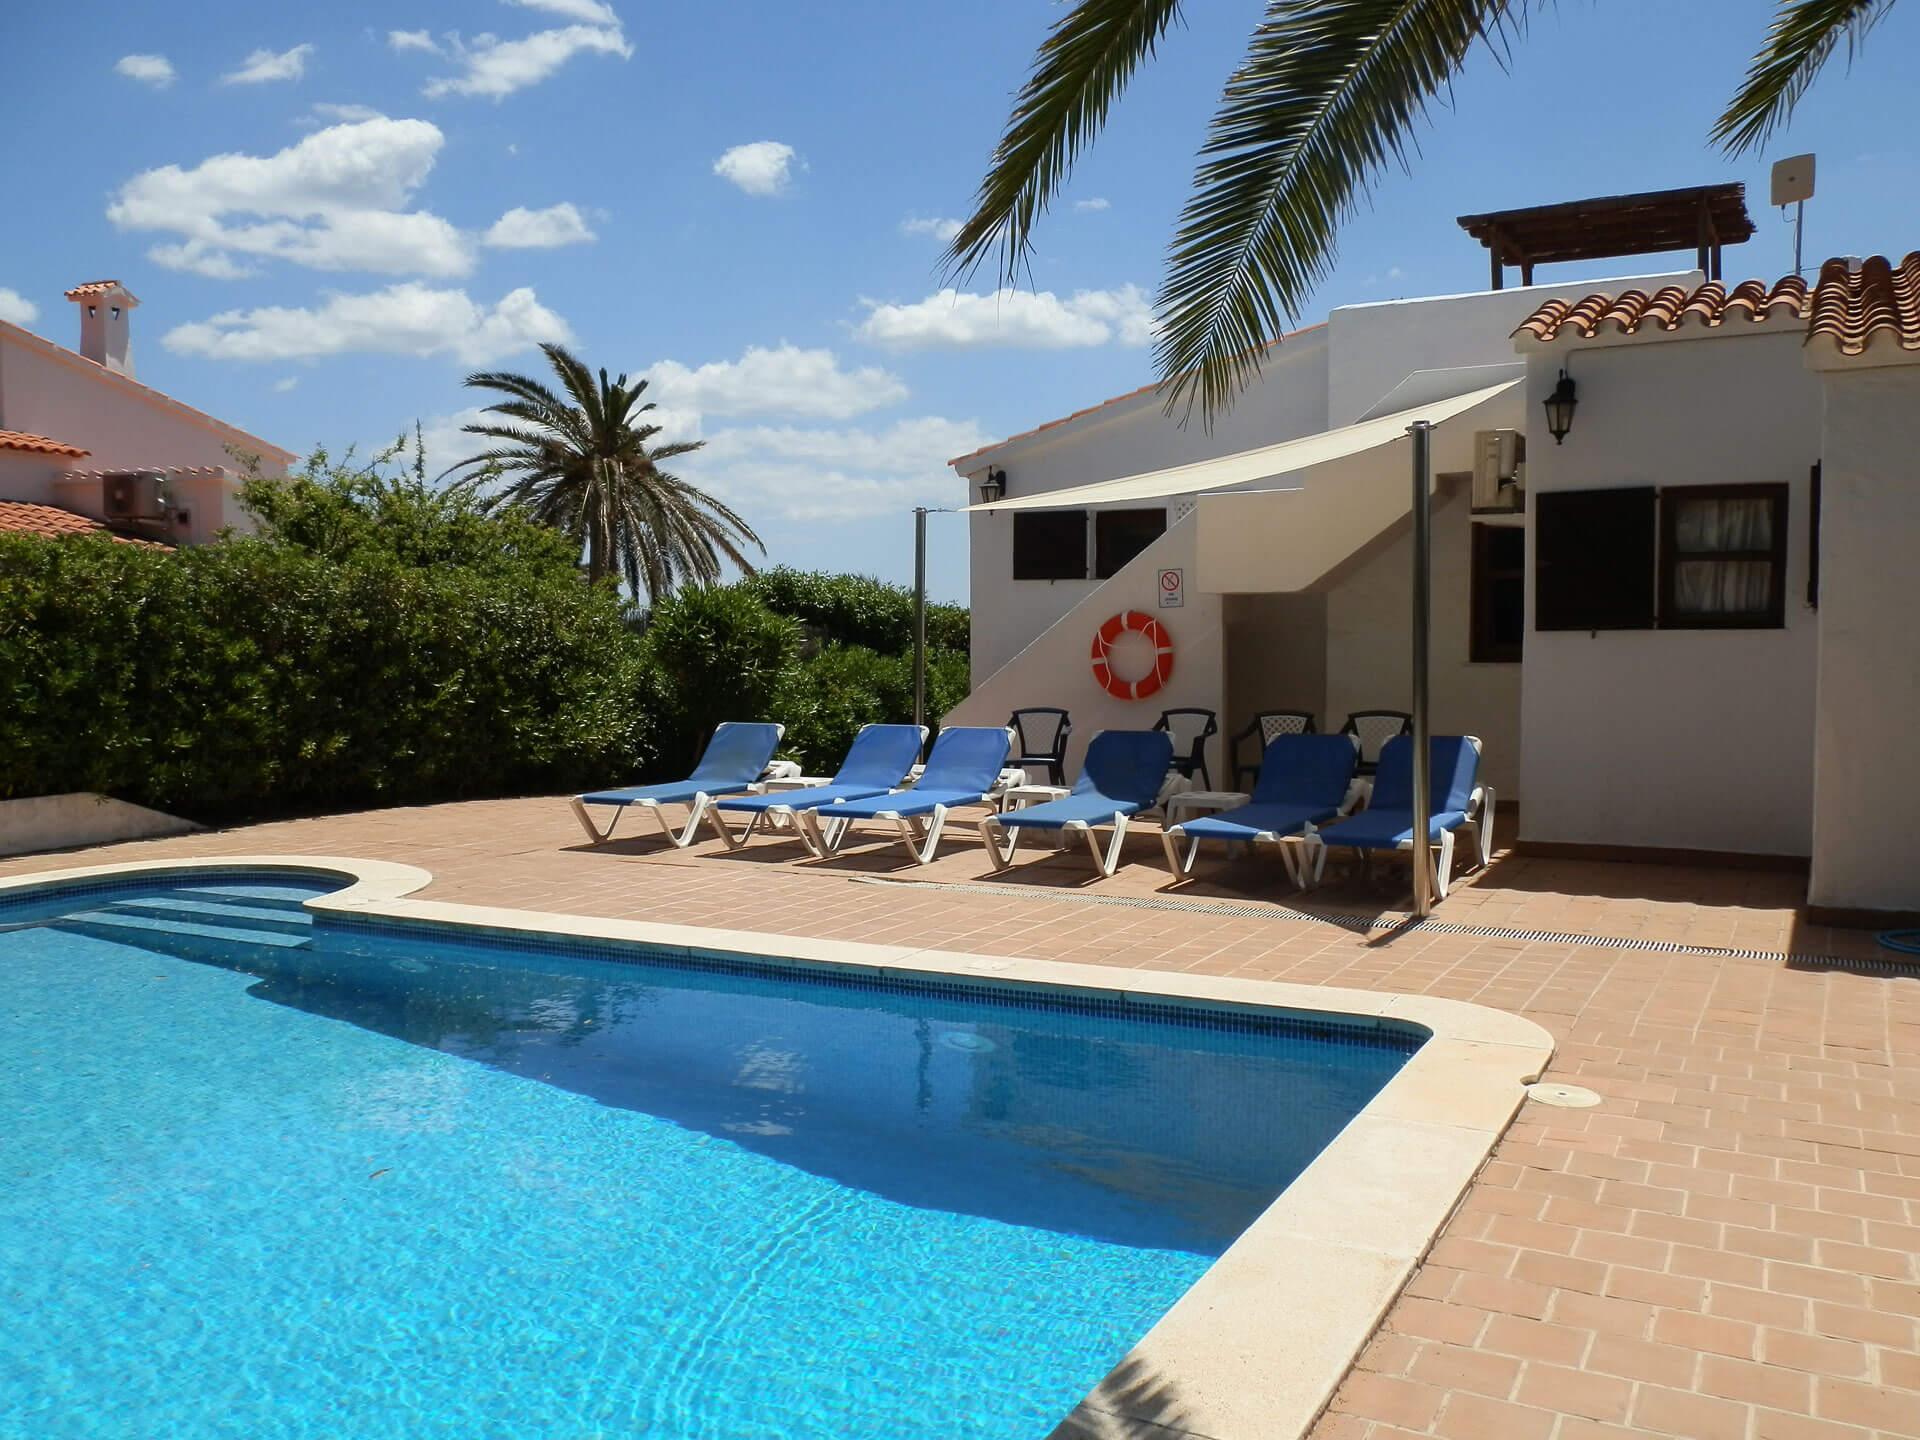 Villa Del Verano - Private pool area - Villa with pool - Binibeca - Menorca